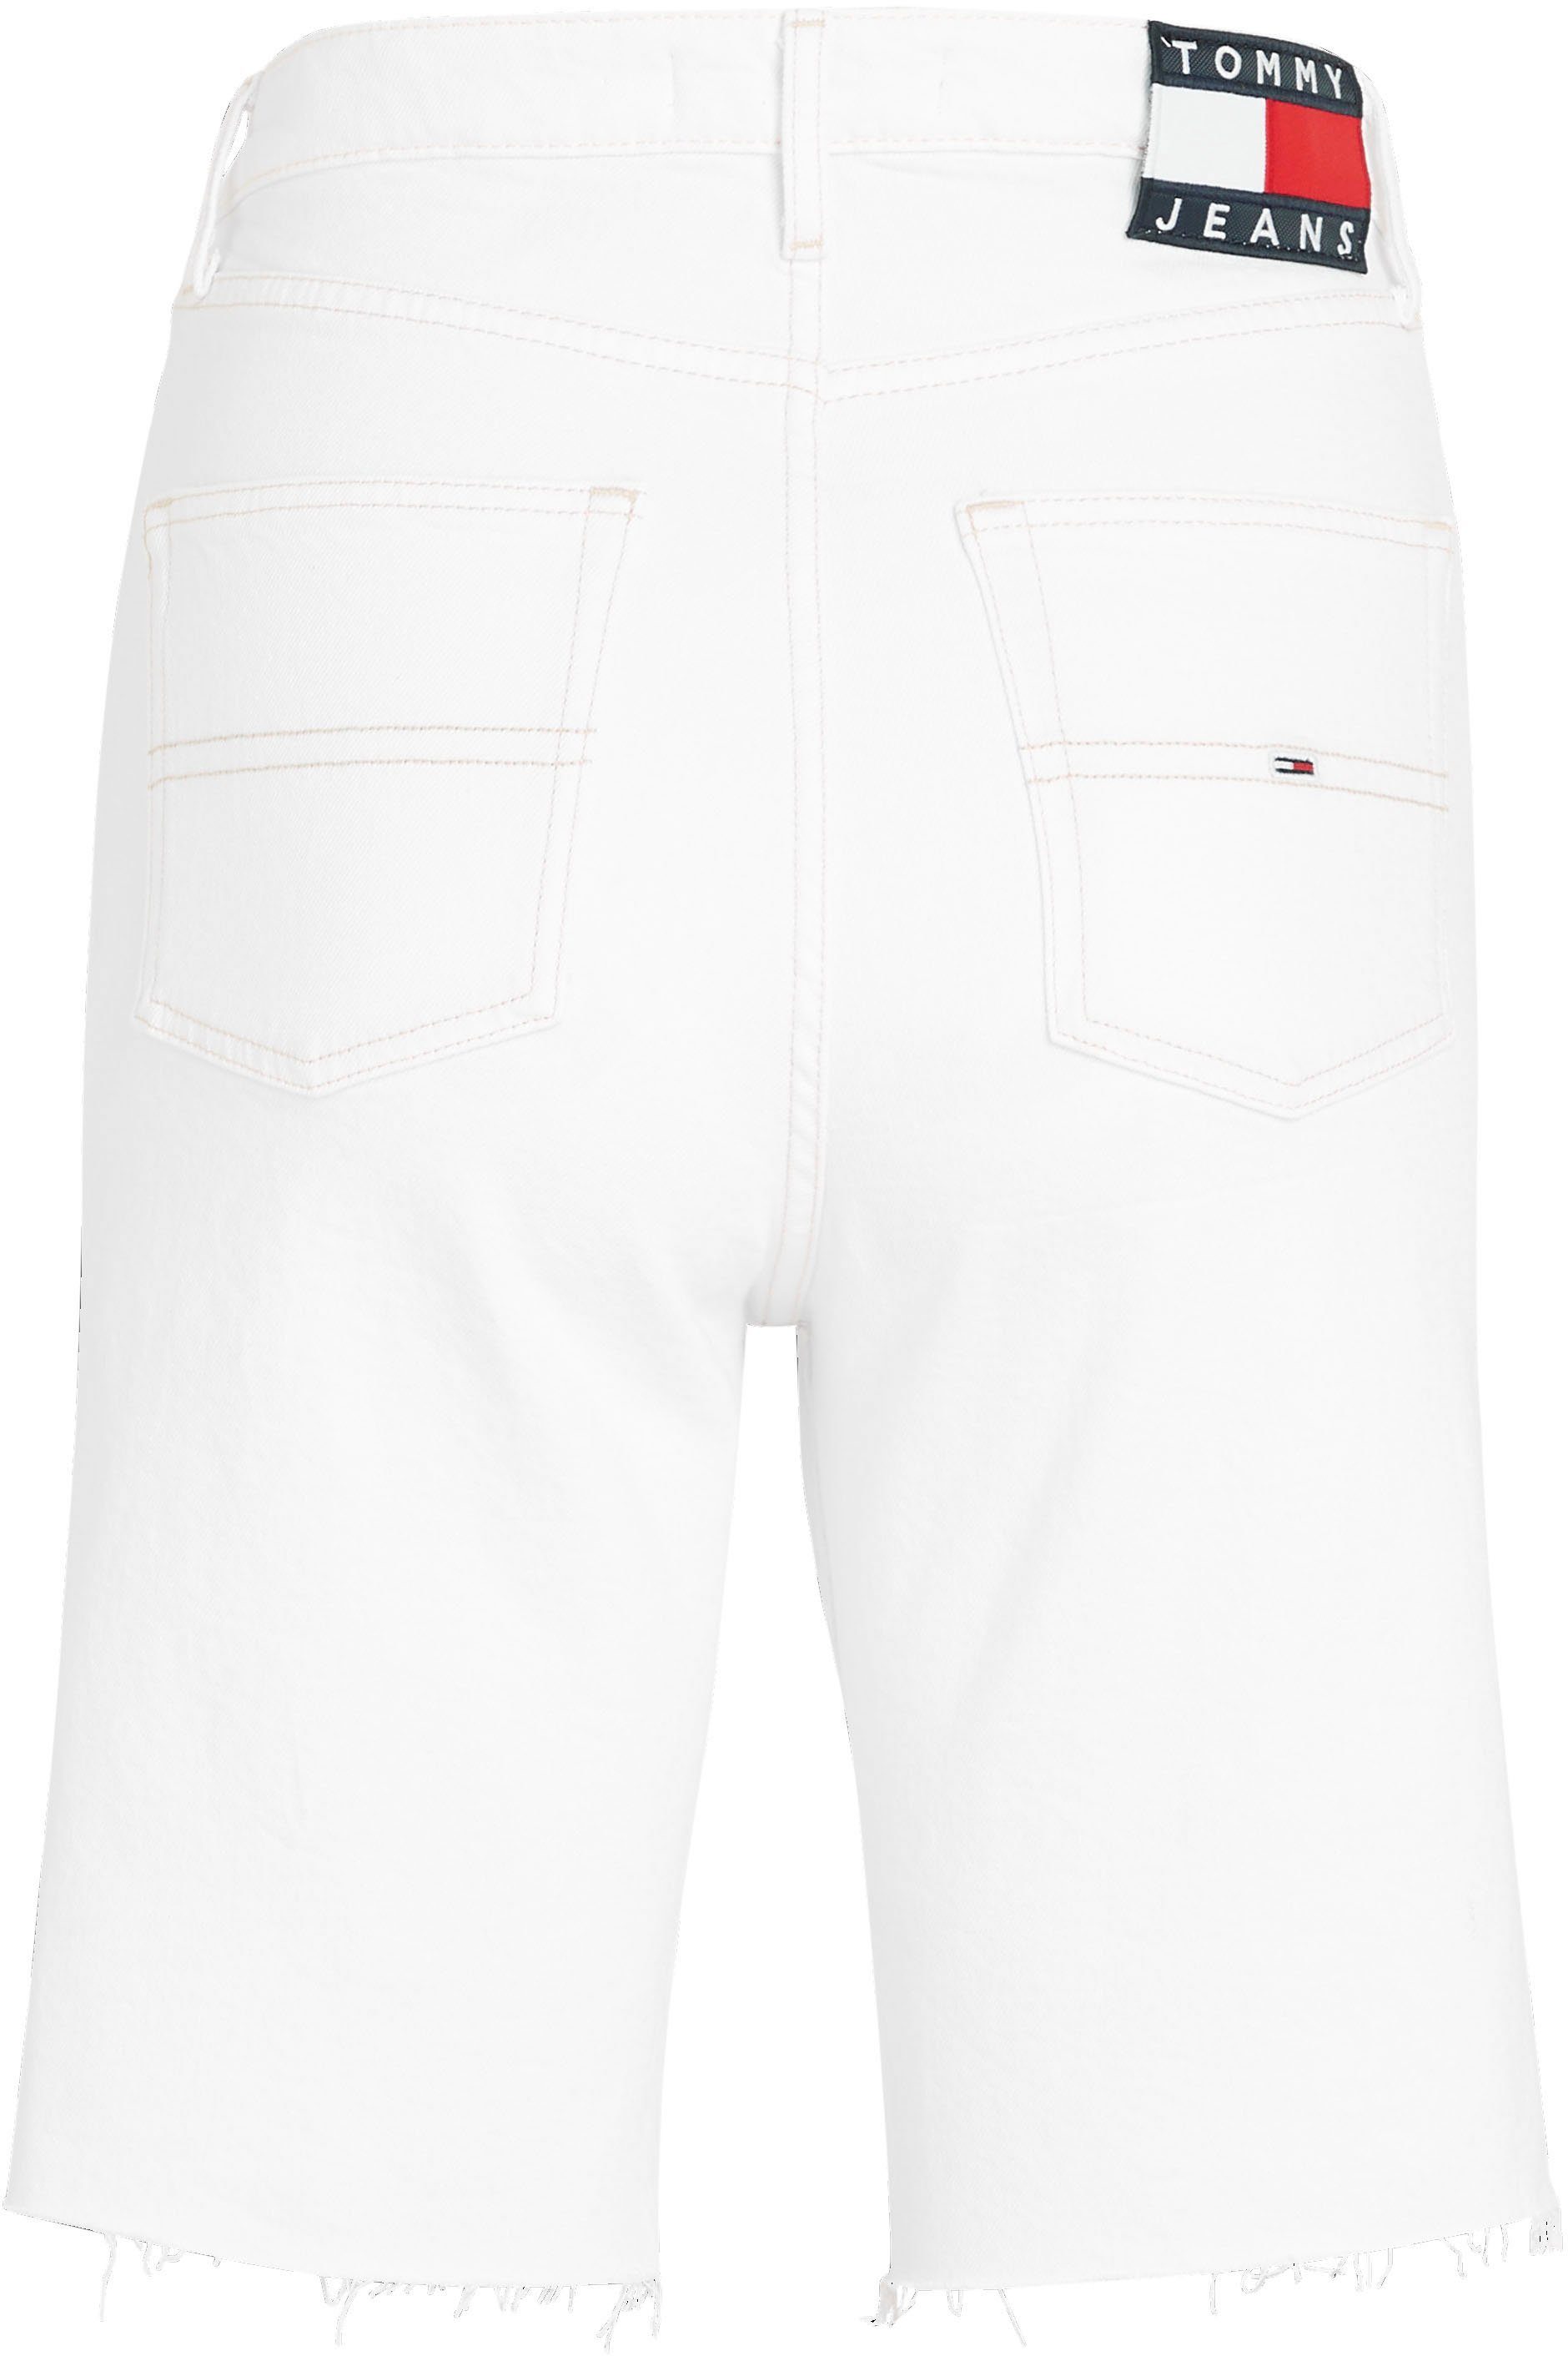 BERMUDA 5-Pocket-Style HARPER im Jeans BG0196 Bermudas HR Tommy